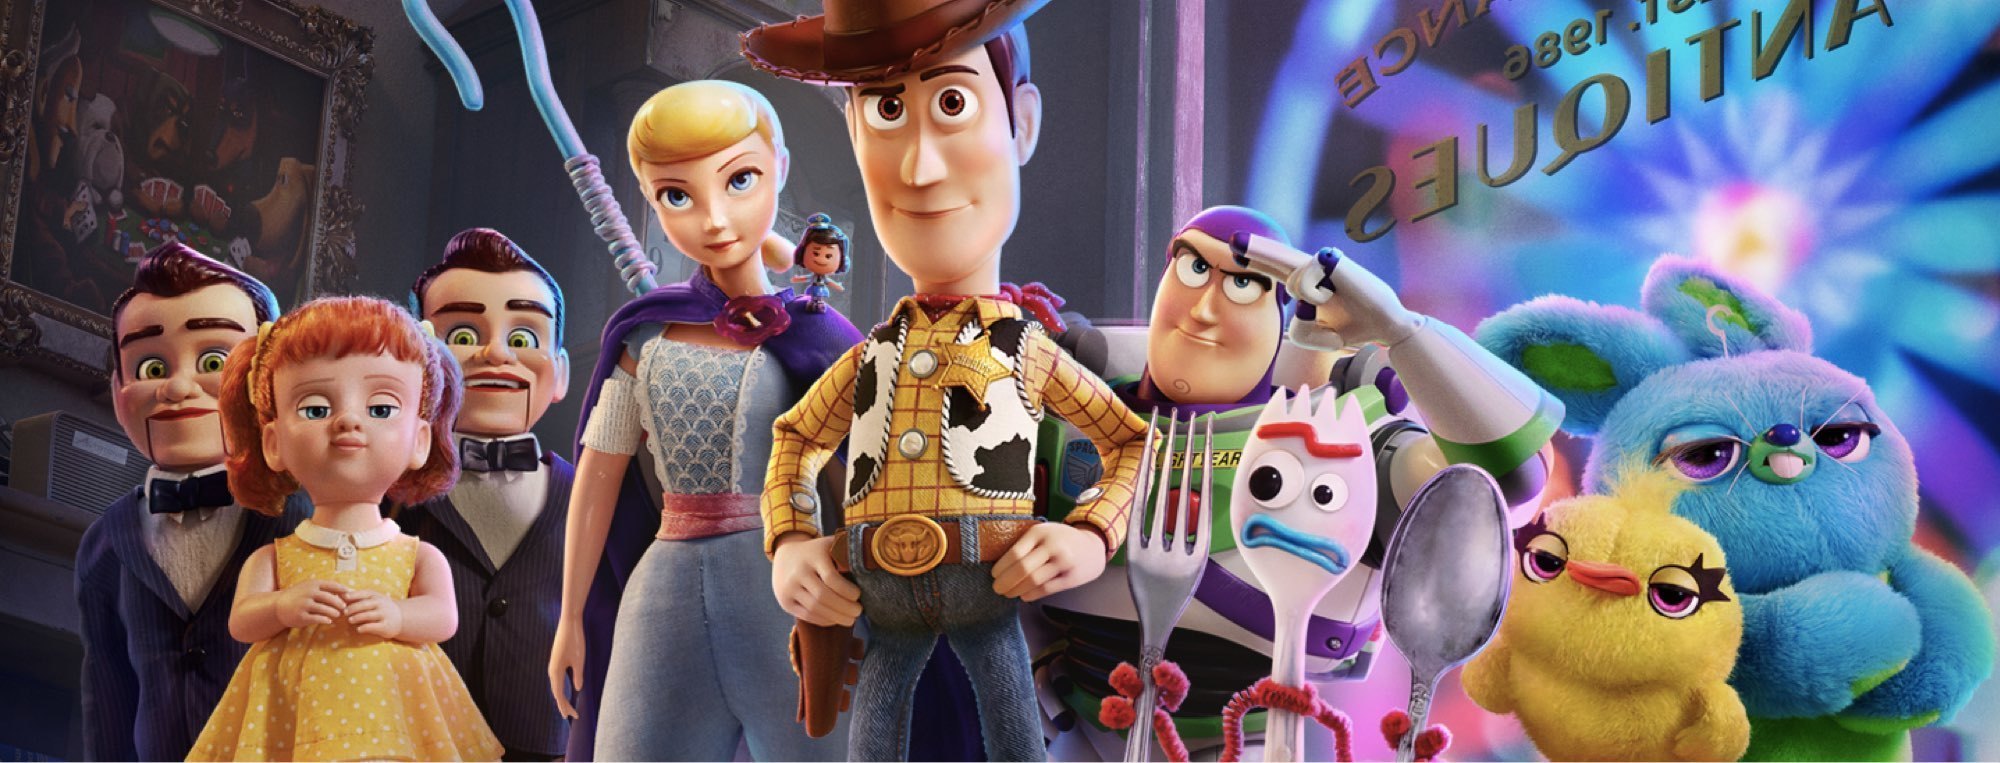 Toy Story 4: conoce a los nuevos personajes